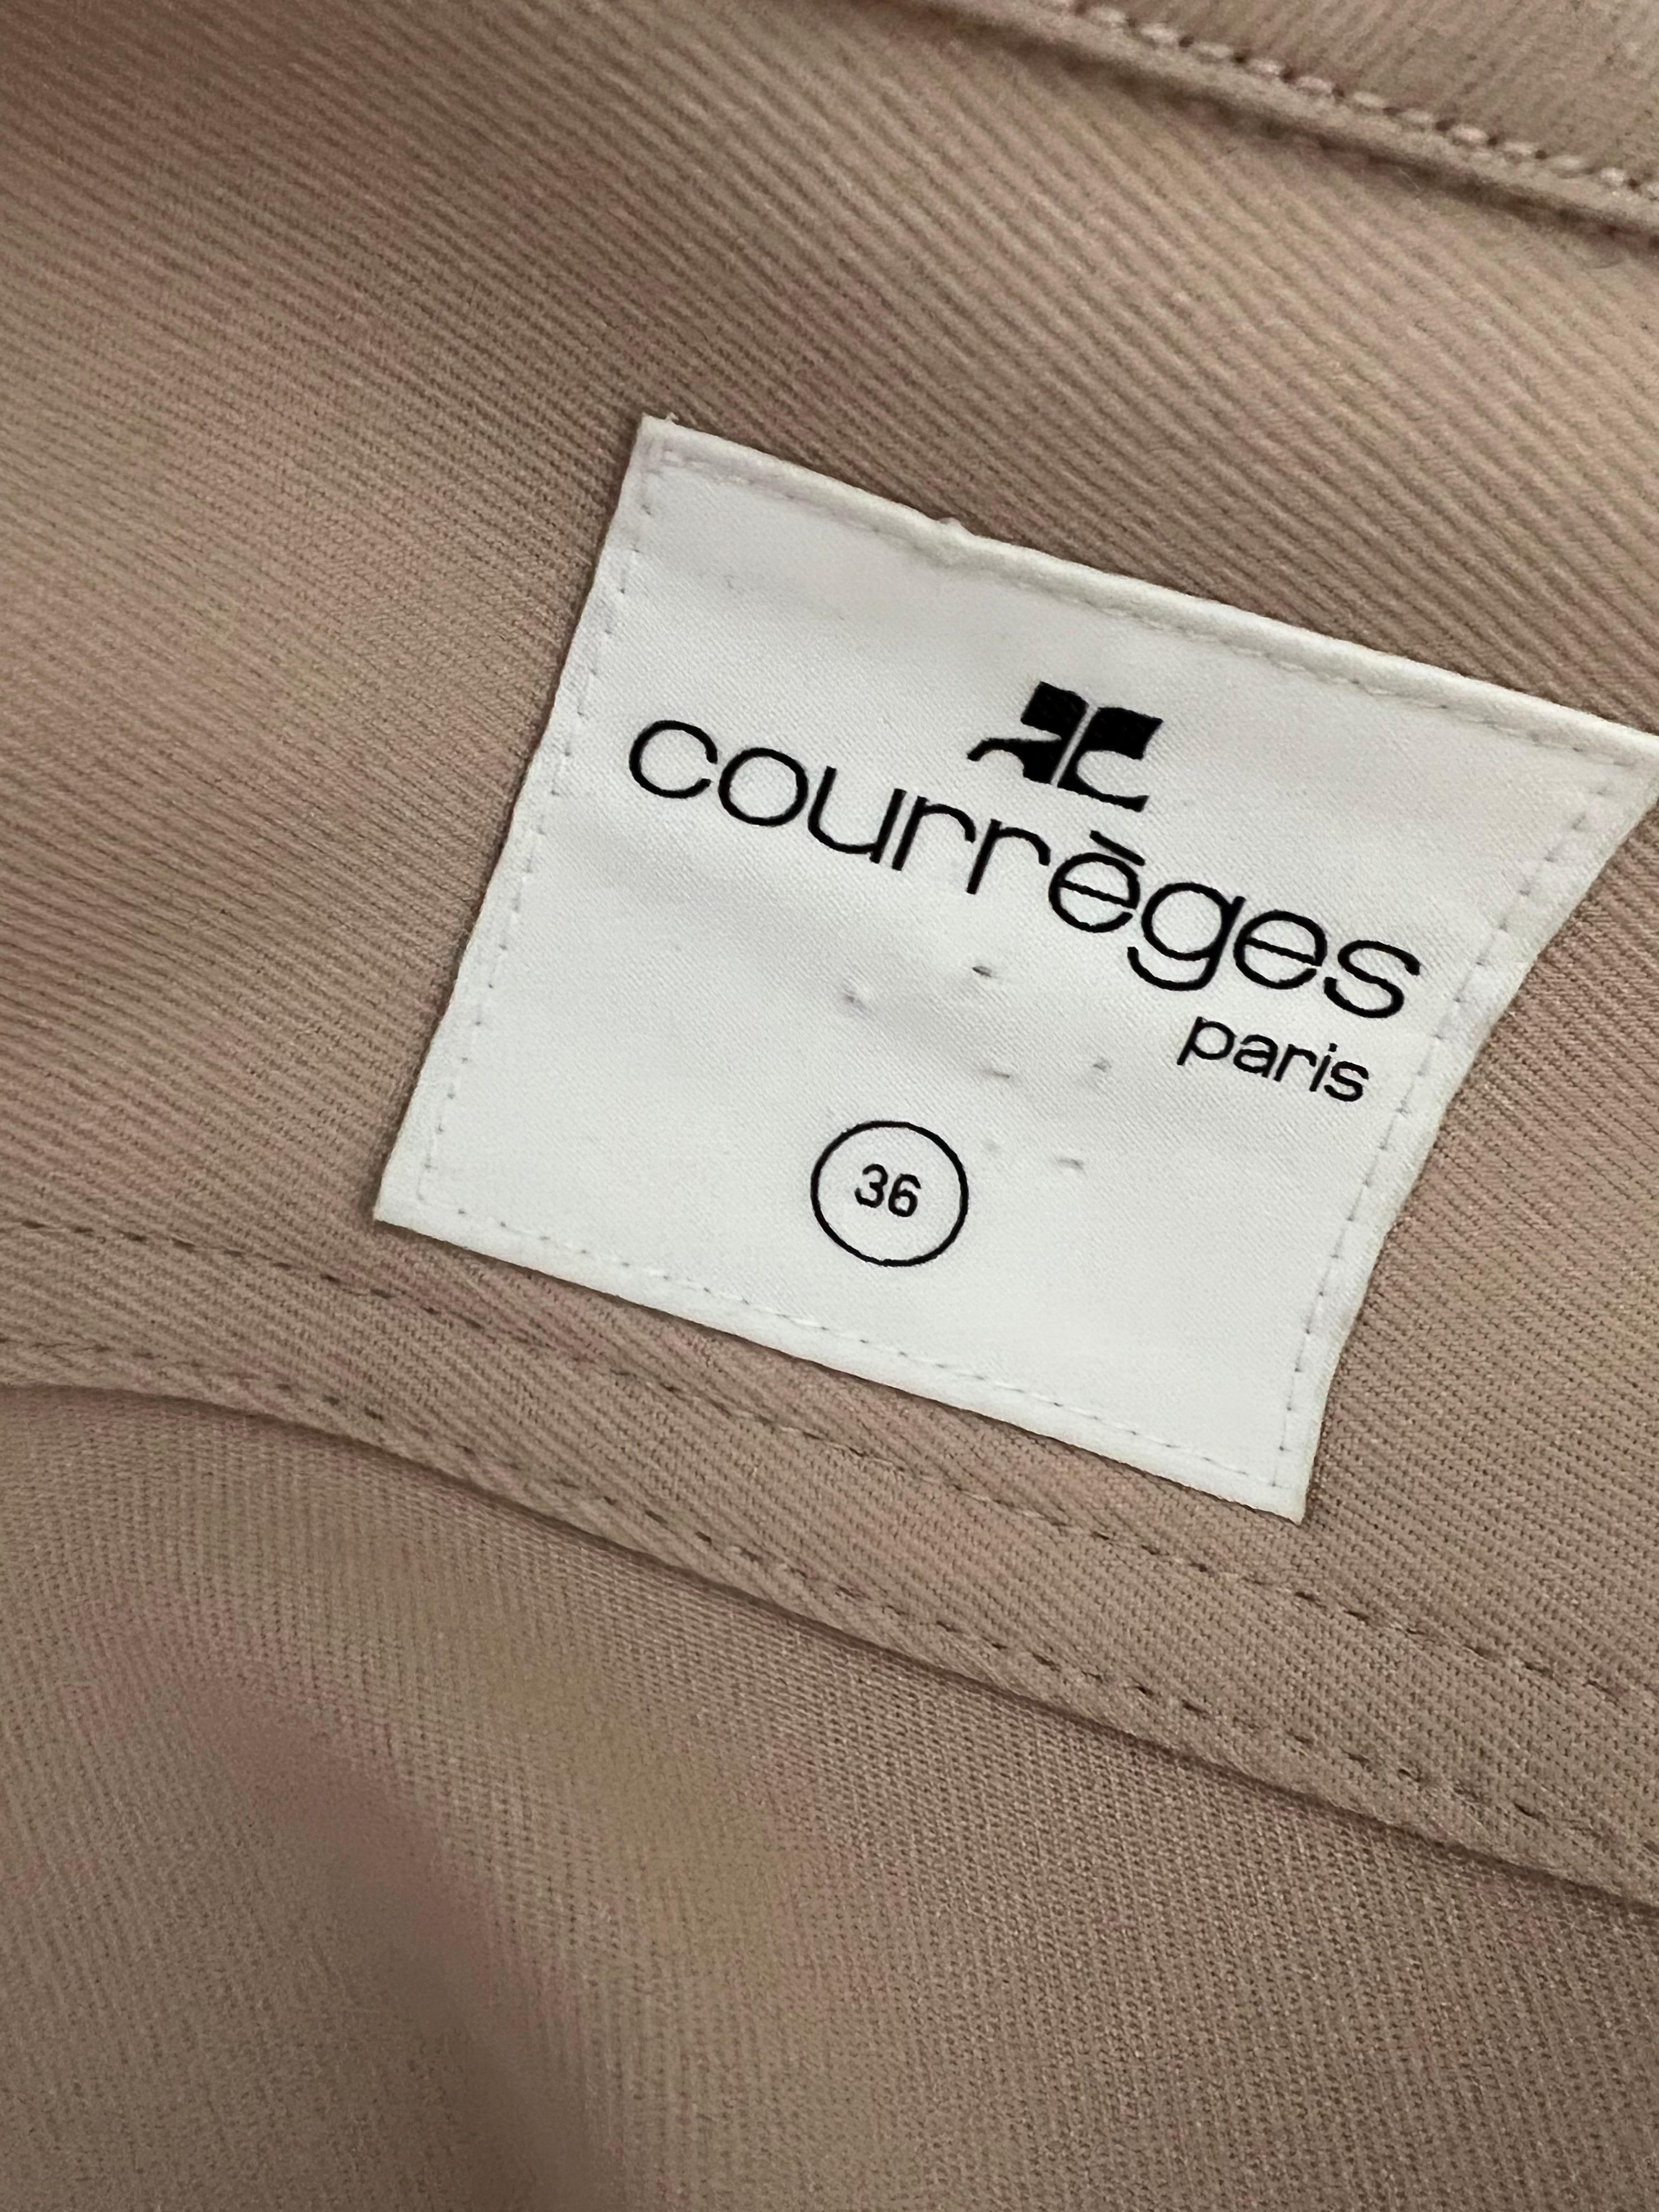 Women's Courreges Paris Beige Jacket, Size 36 For Sale